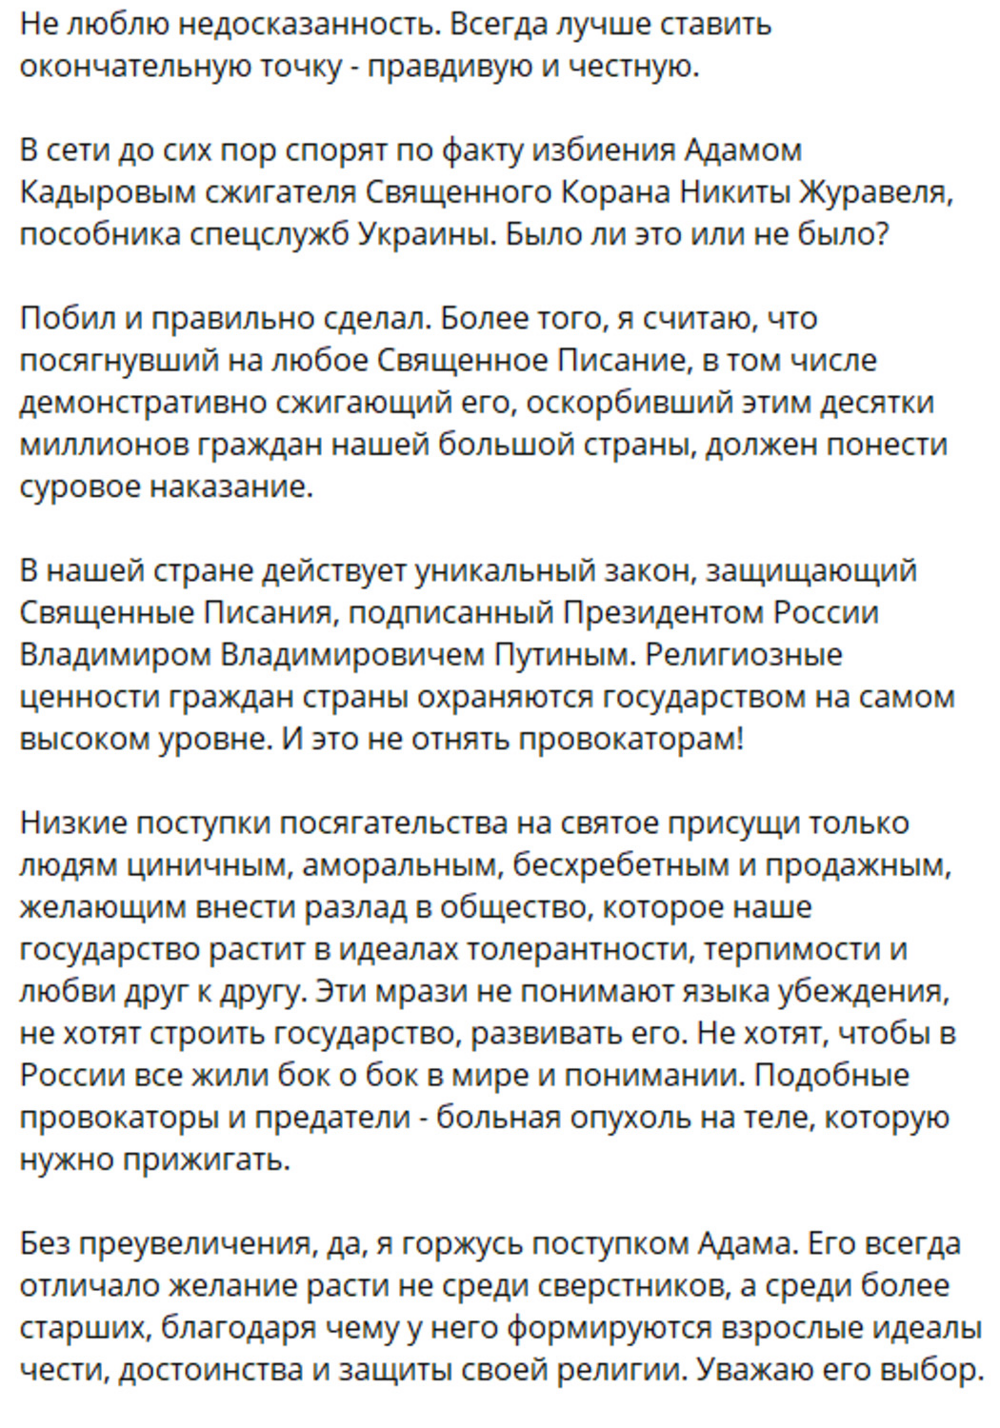 «Побил и правильно сделал»: Рамзан Кадыров выложил запись, на которой его сын проучил сжегшего Коран Никиту Журавеля